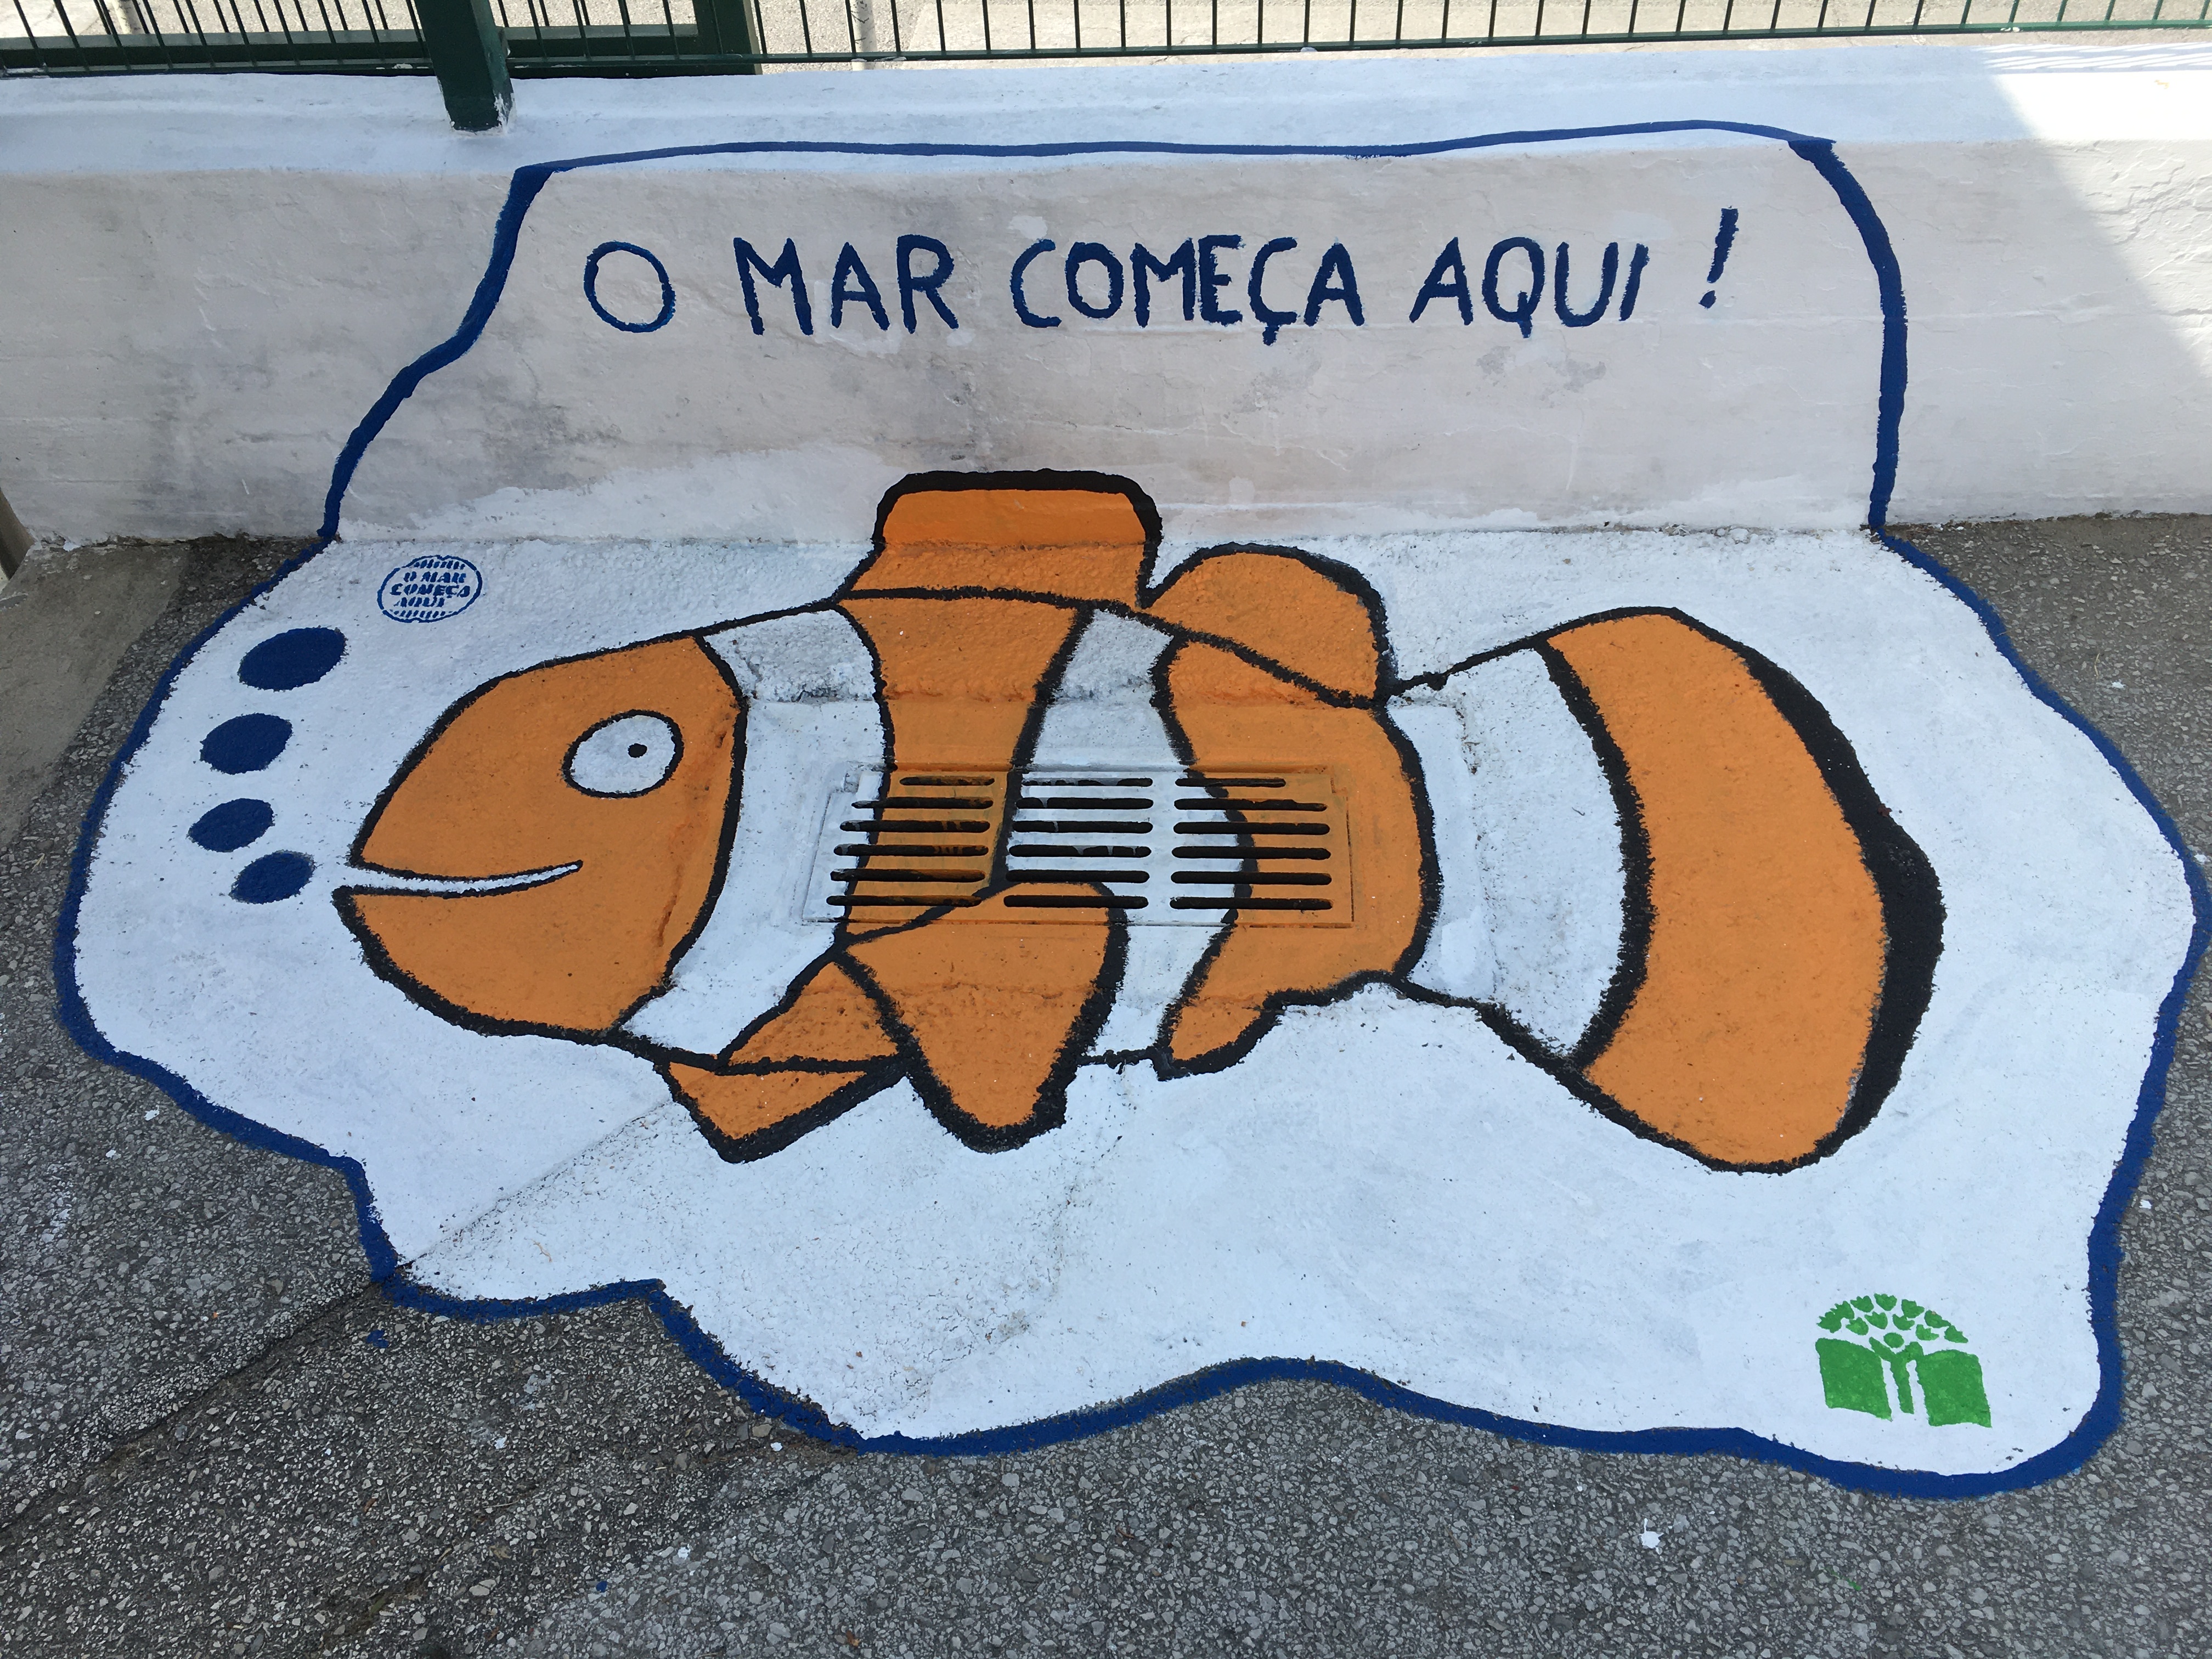 Este trabalho foi desenvolvido no âmbito da temática do mar, a aluna desenvolveu um peixe à volta de uma sarjeta / sumidouro. O desenho teve como base o Nemo, que a aluna pesquisou na internet e transcreveu para o seu desenho.